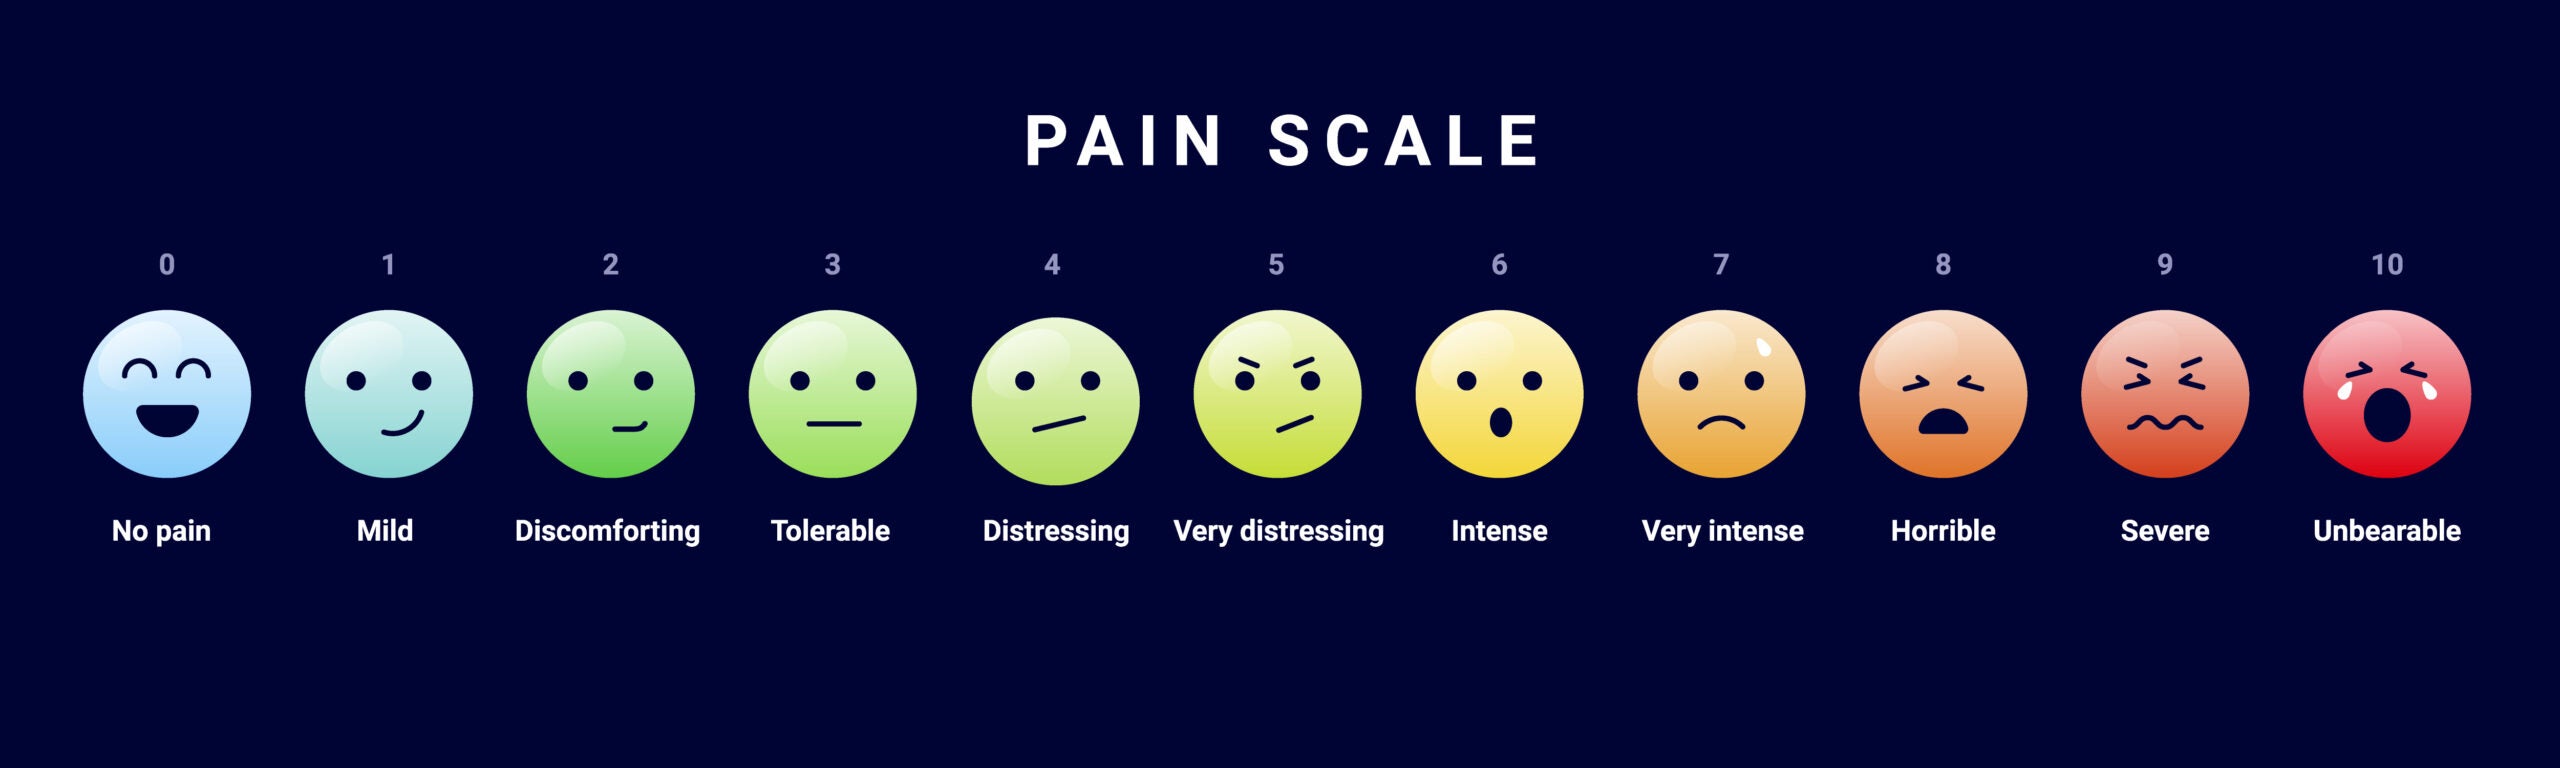 A pain measurement scale